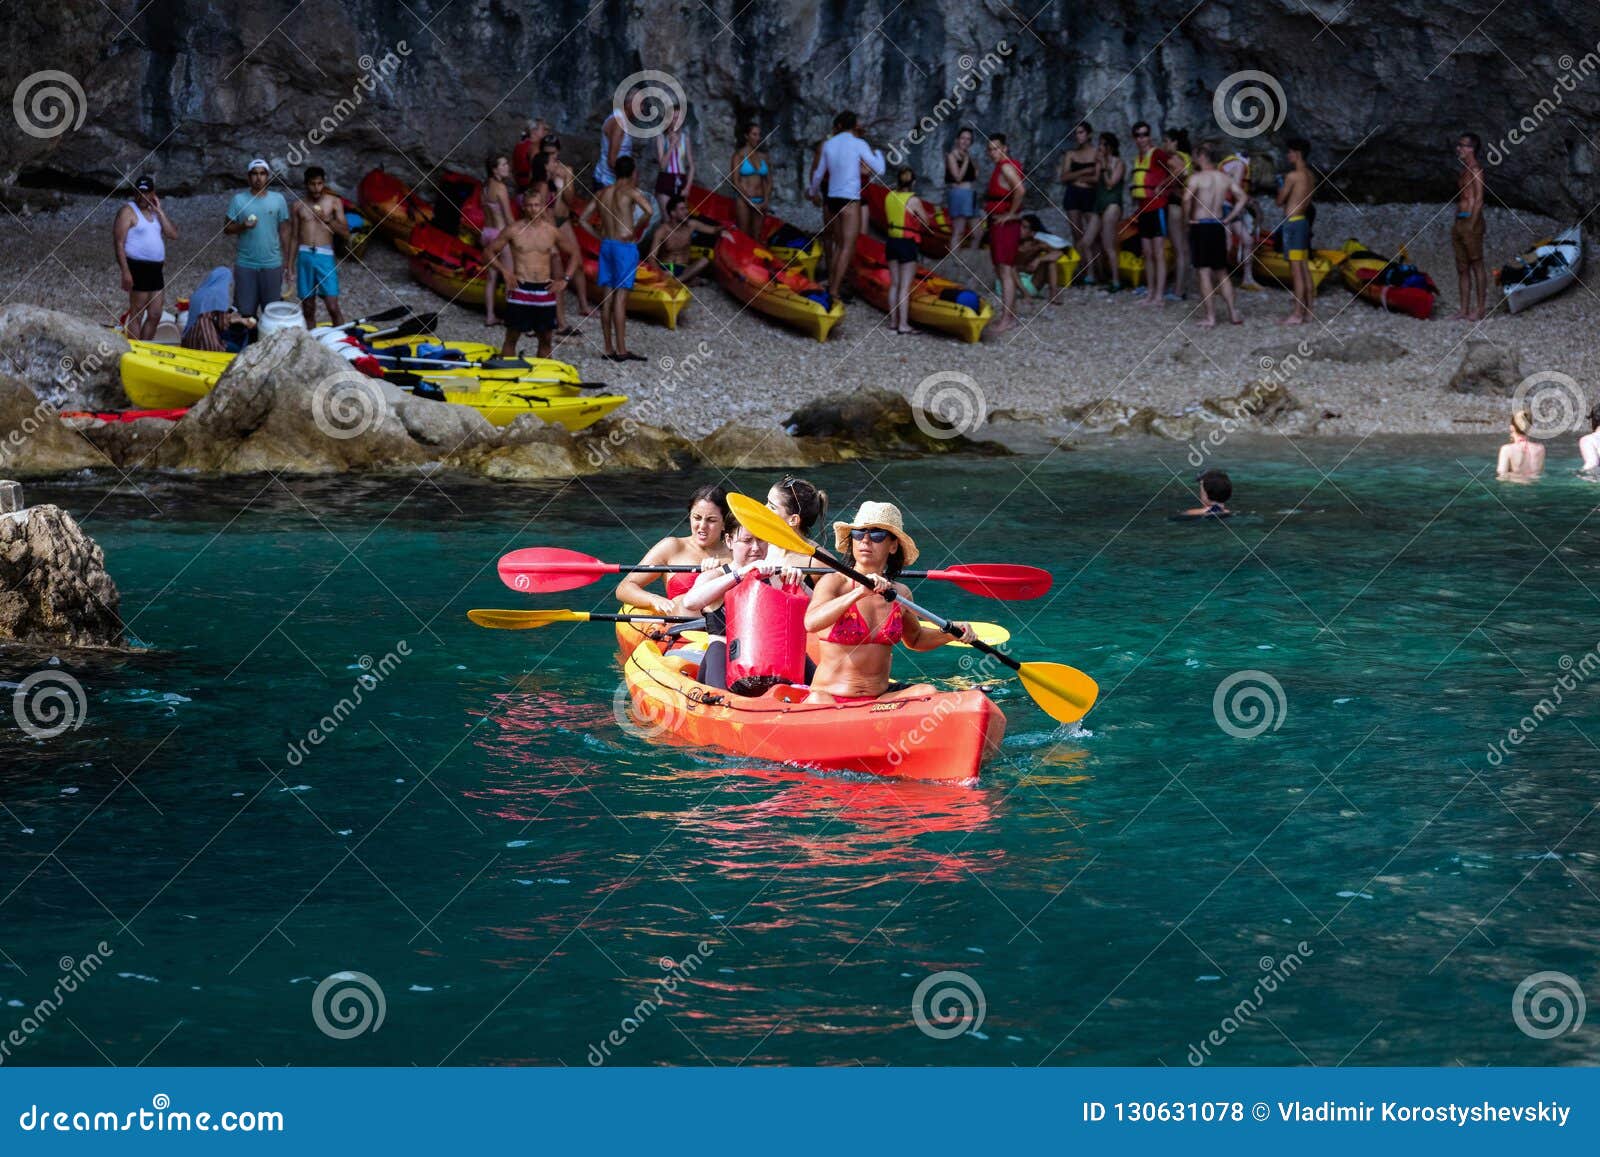 Kayaking in Dubrovnik, Kroatië. Kayaking is zeer populair onder de toeristen die Dubrovnik bezoeken